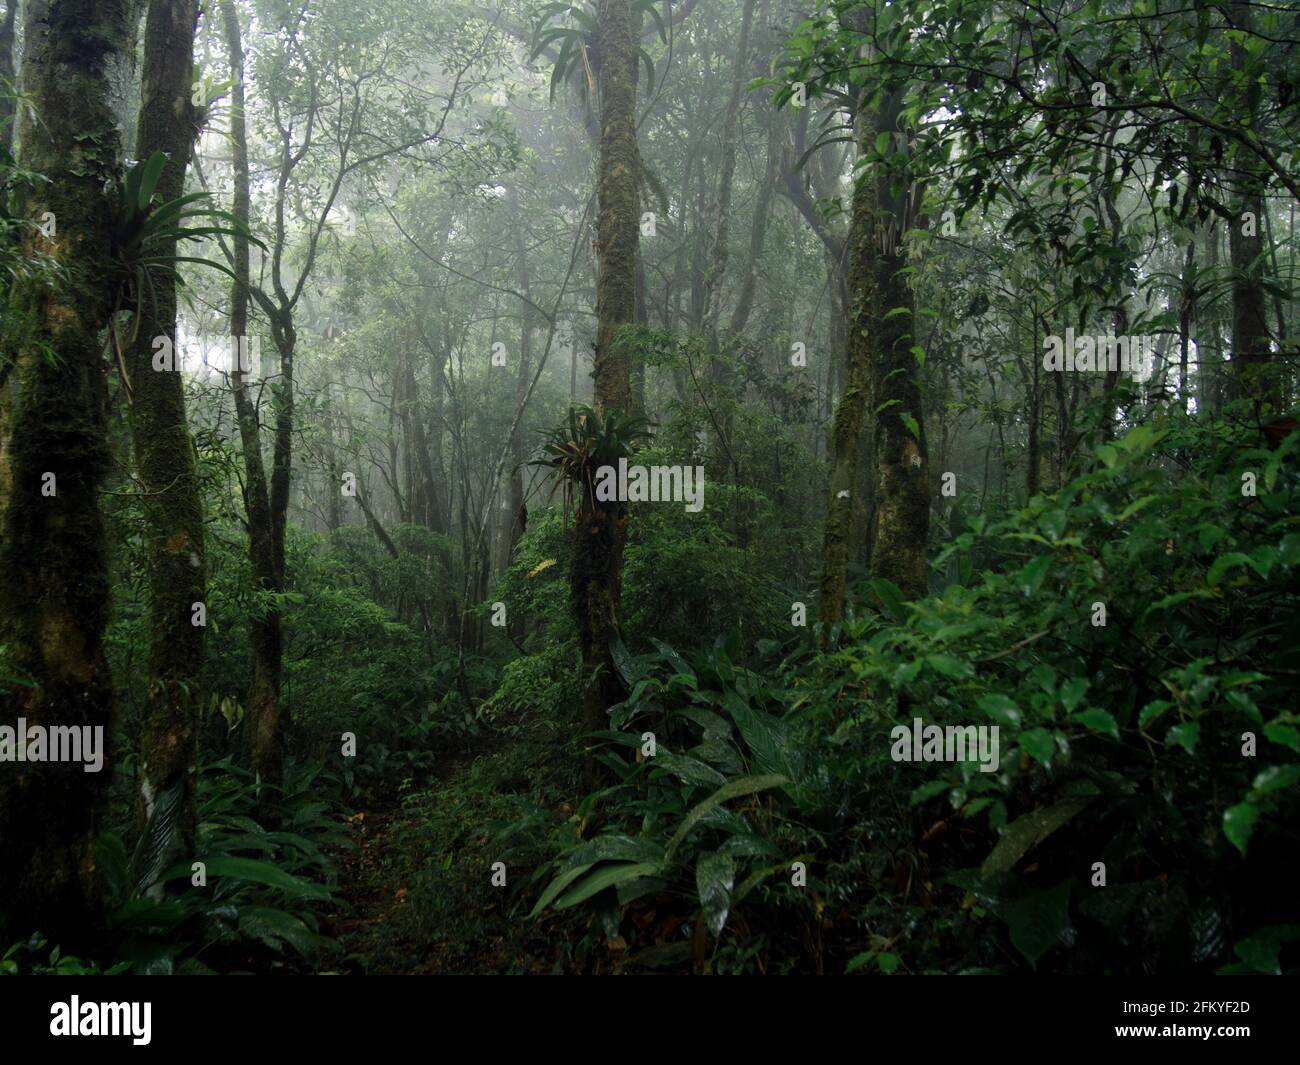 Habitat et végétation dans la forêt atlantique du sud-est, dans la chaîne de montagnes de Mantiqueira, Sao Francisco Xavier, Brésil Banque D'Images